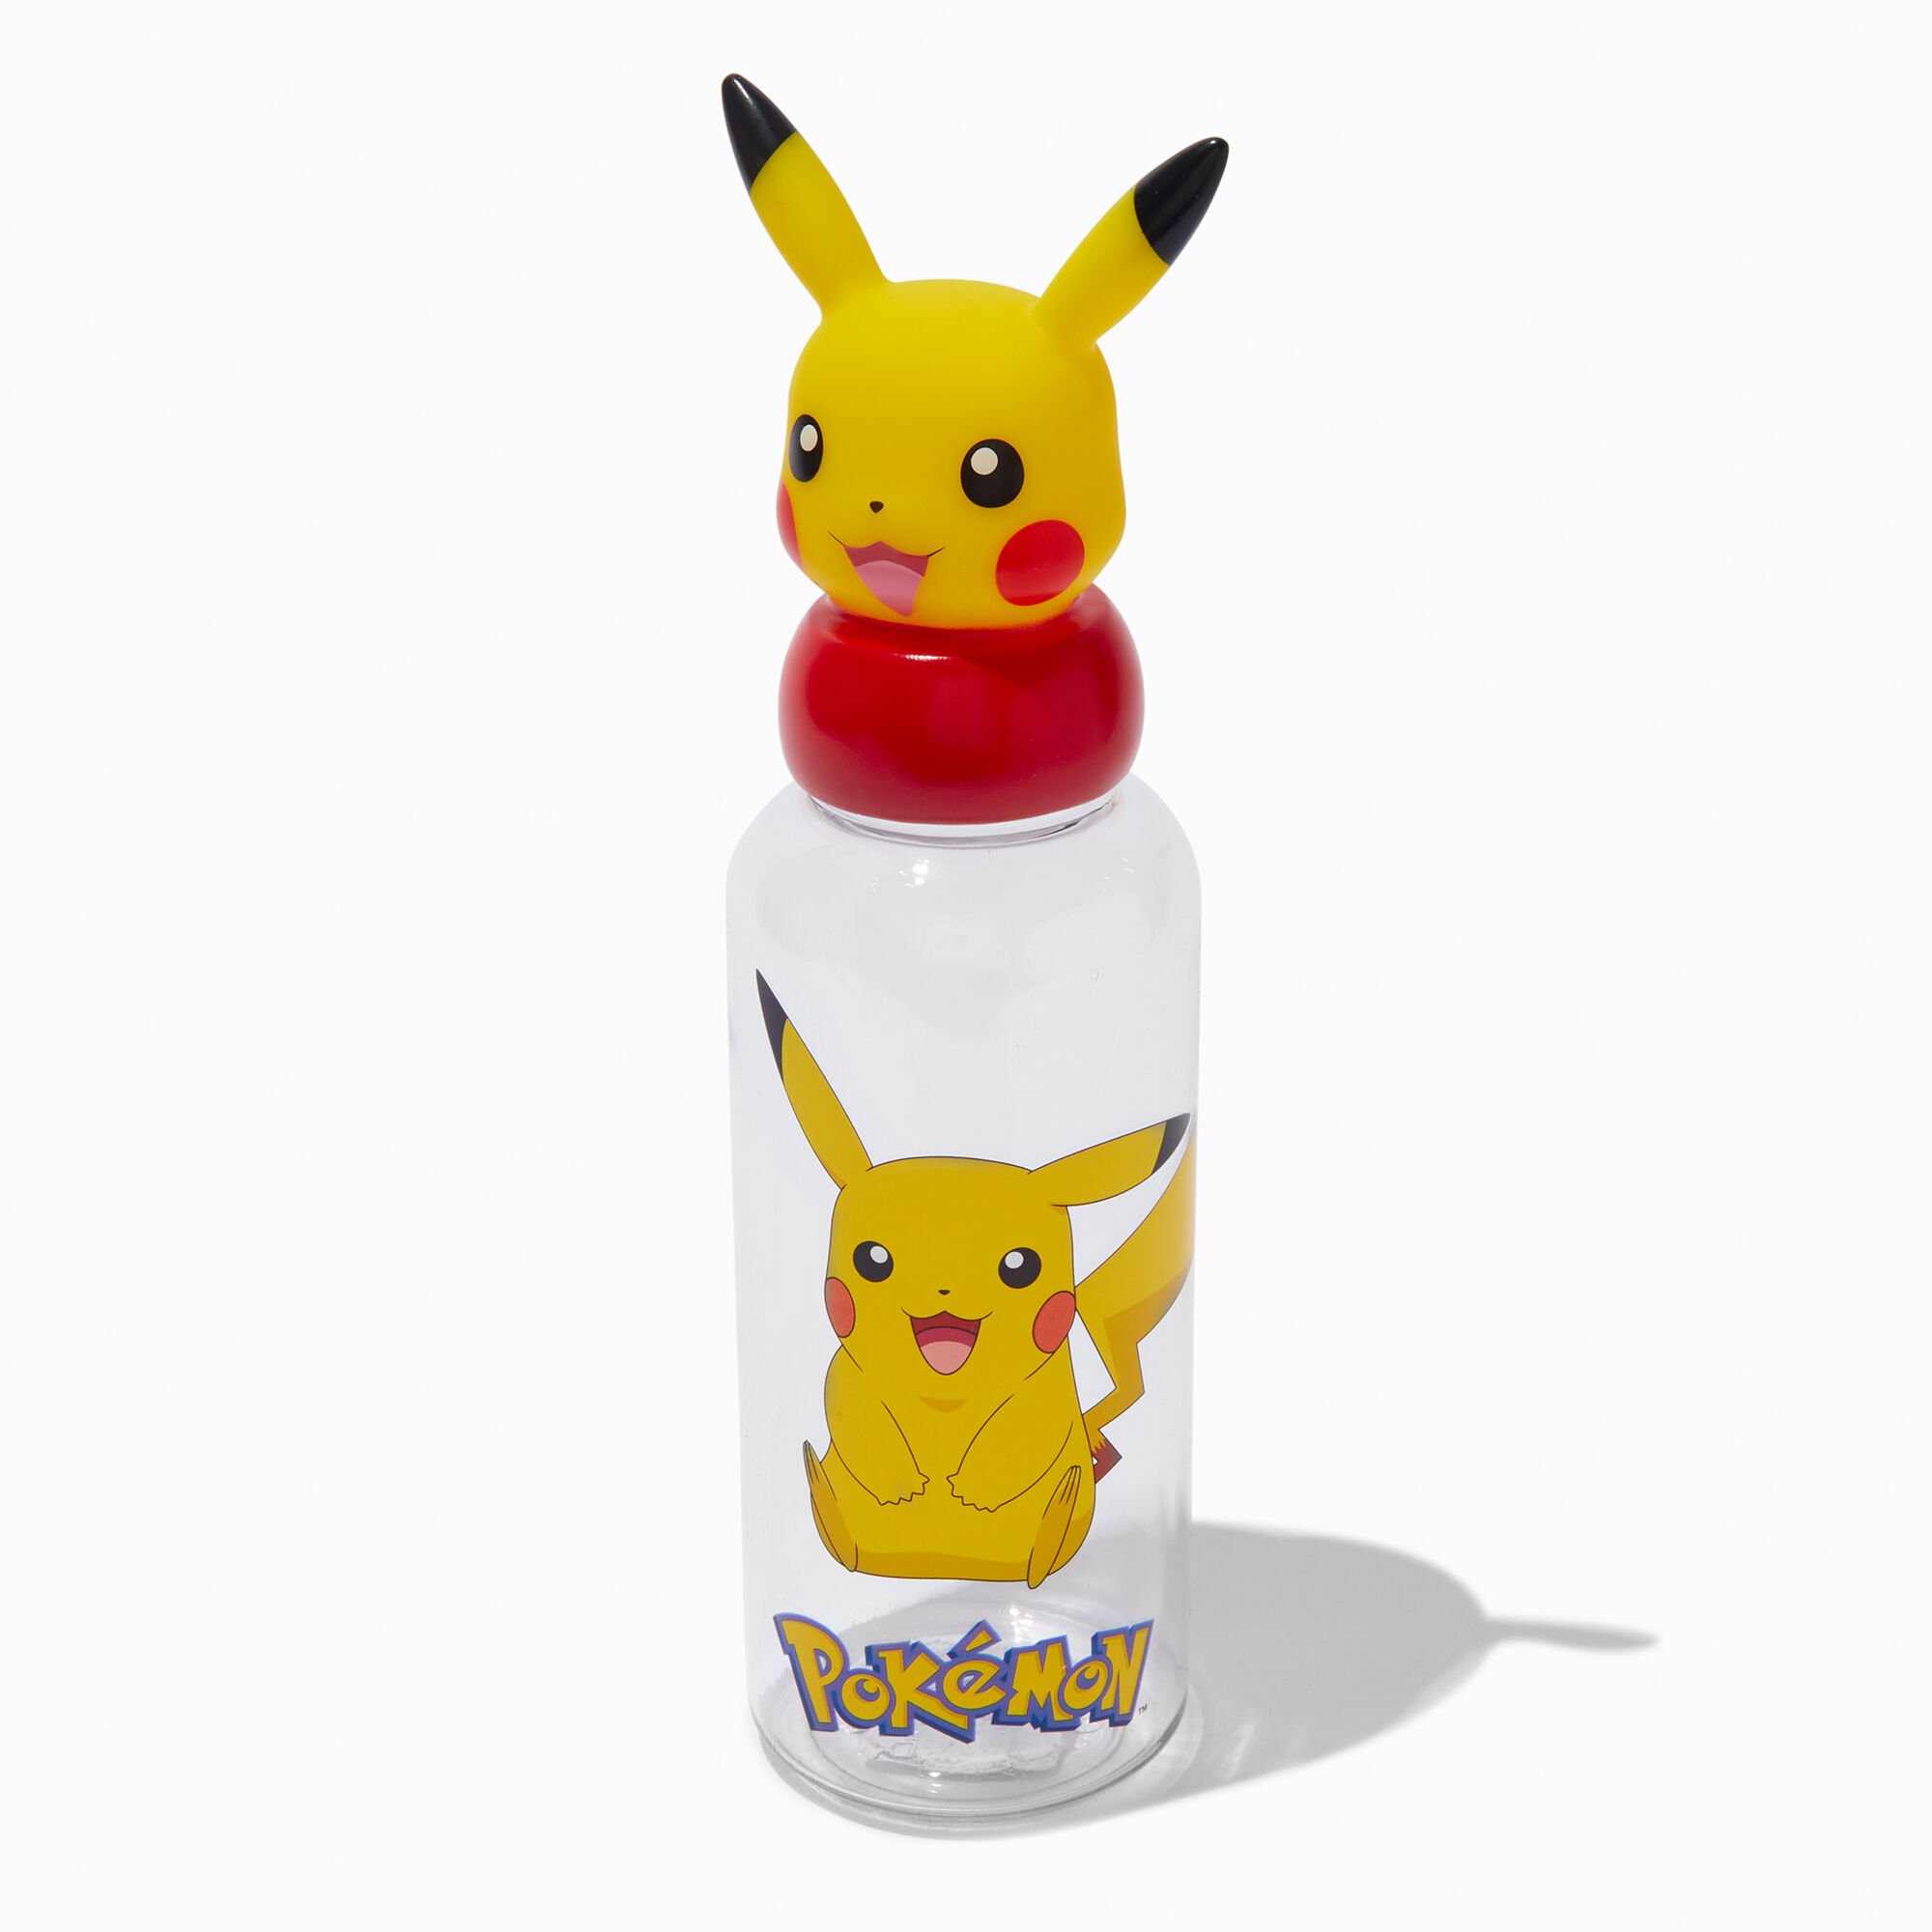 View Claires Pokémon 3D Water Bottle information